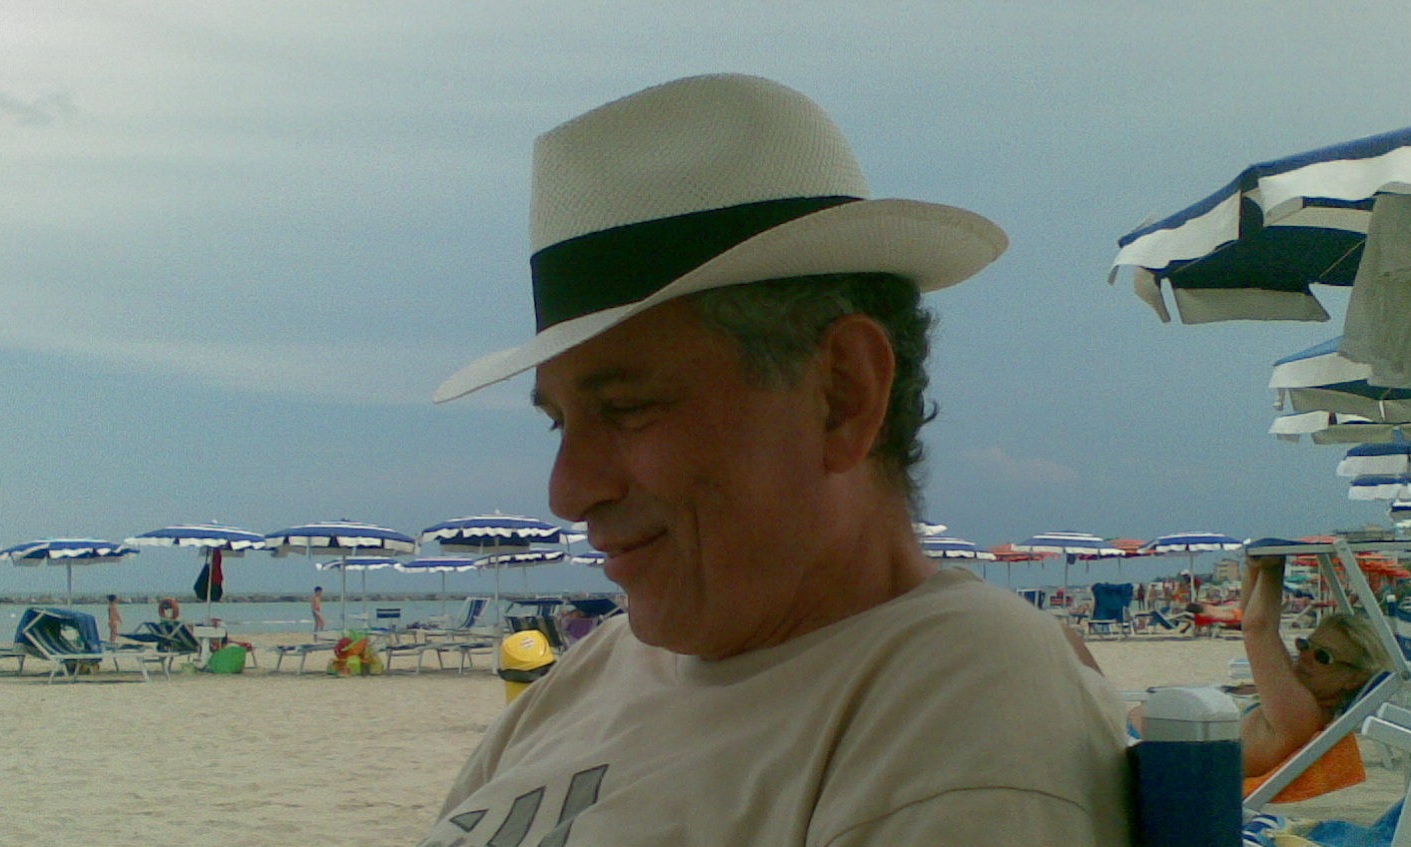 Riccardo Mario Corato in 2010